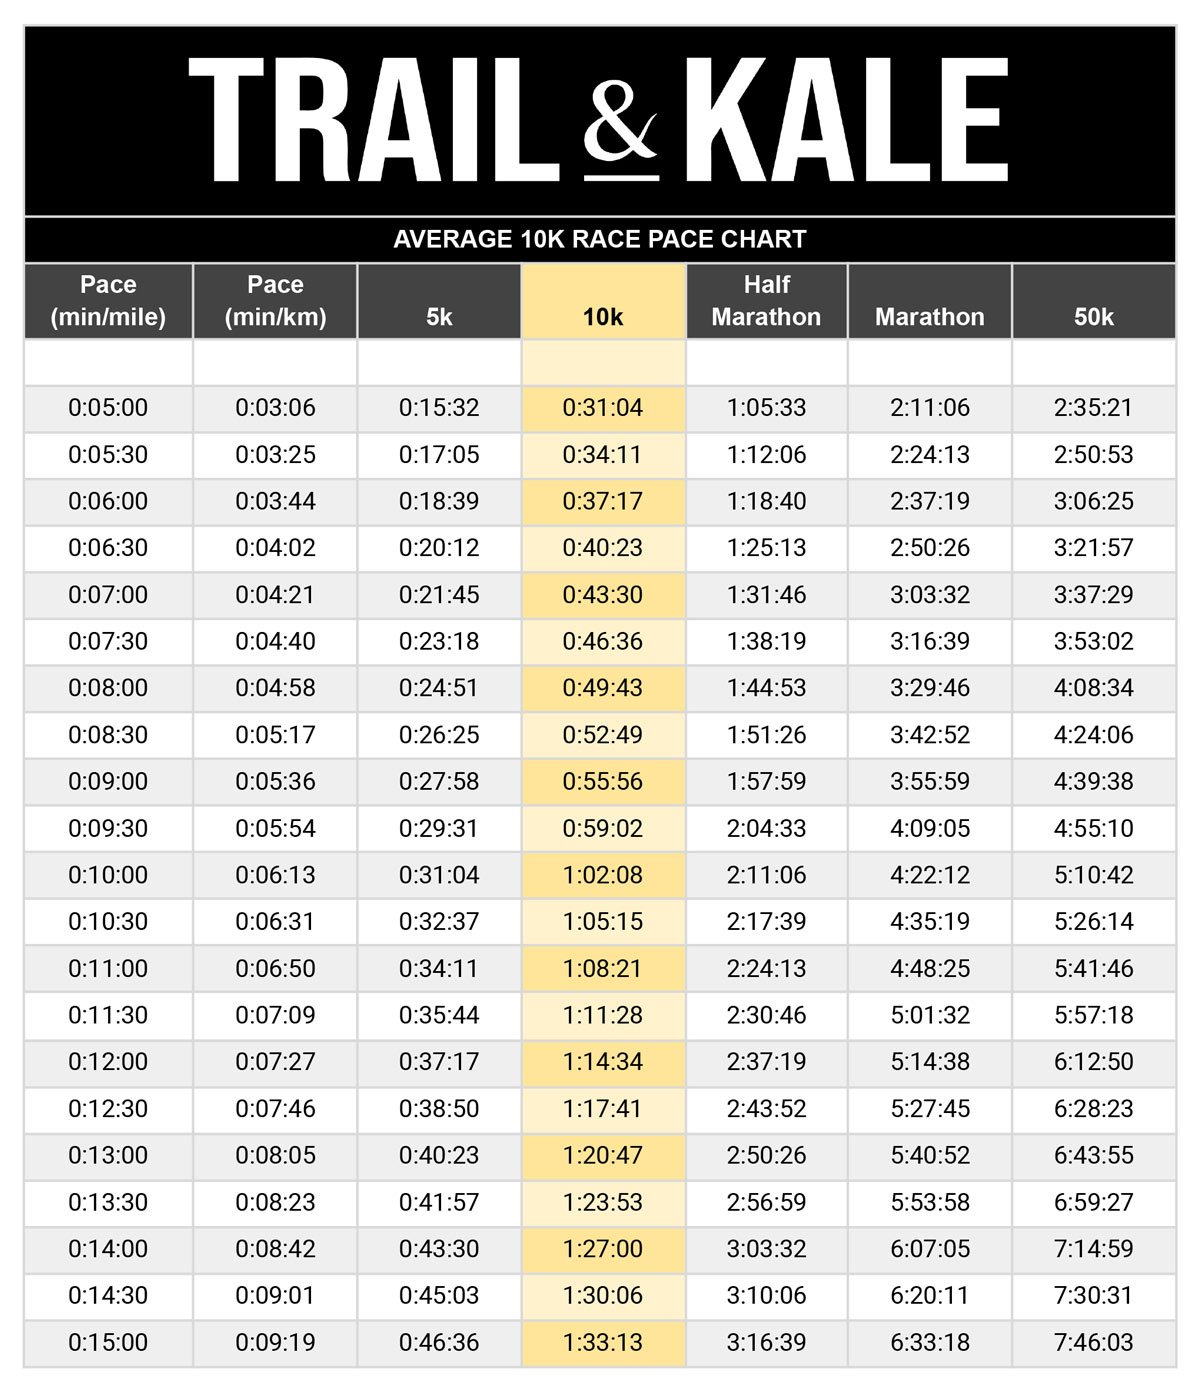 Average 10k Race Pace Chart